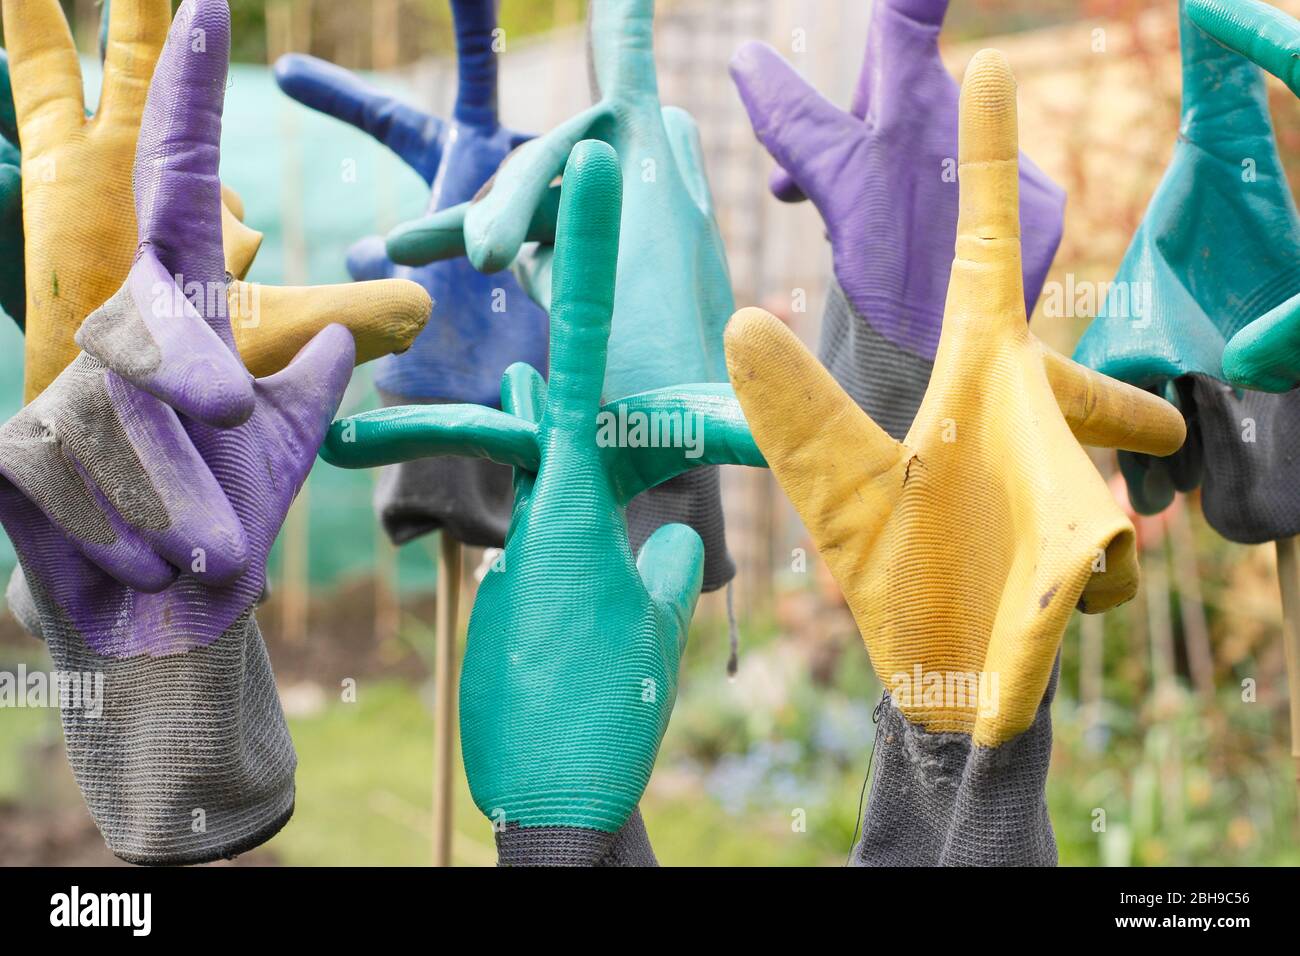 Sécher des gants de jardinage fraîchement lavés sur des cannes de bambou dans un jardin Banque D'Images